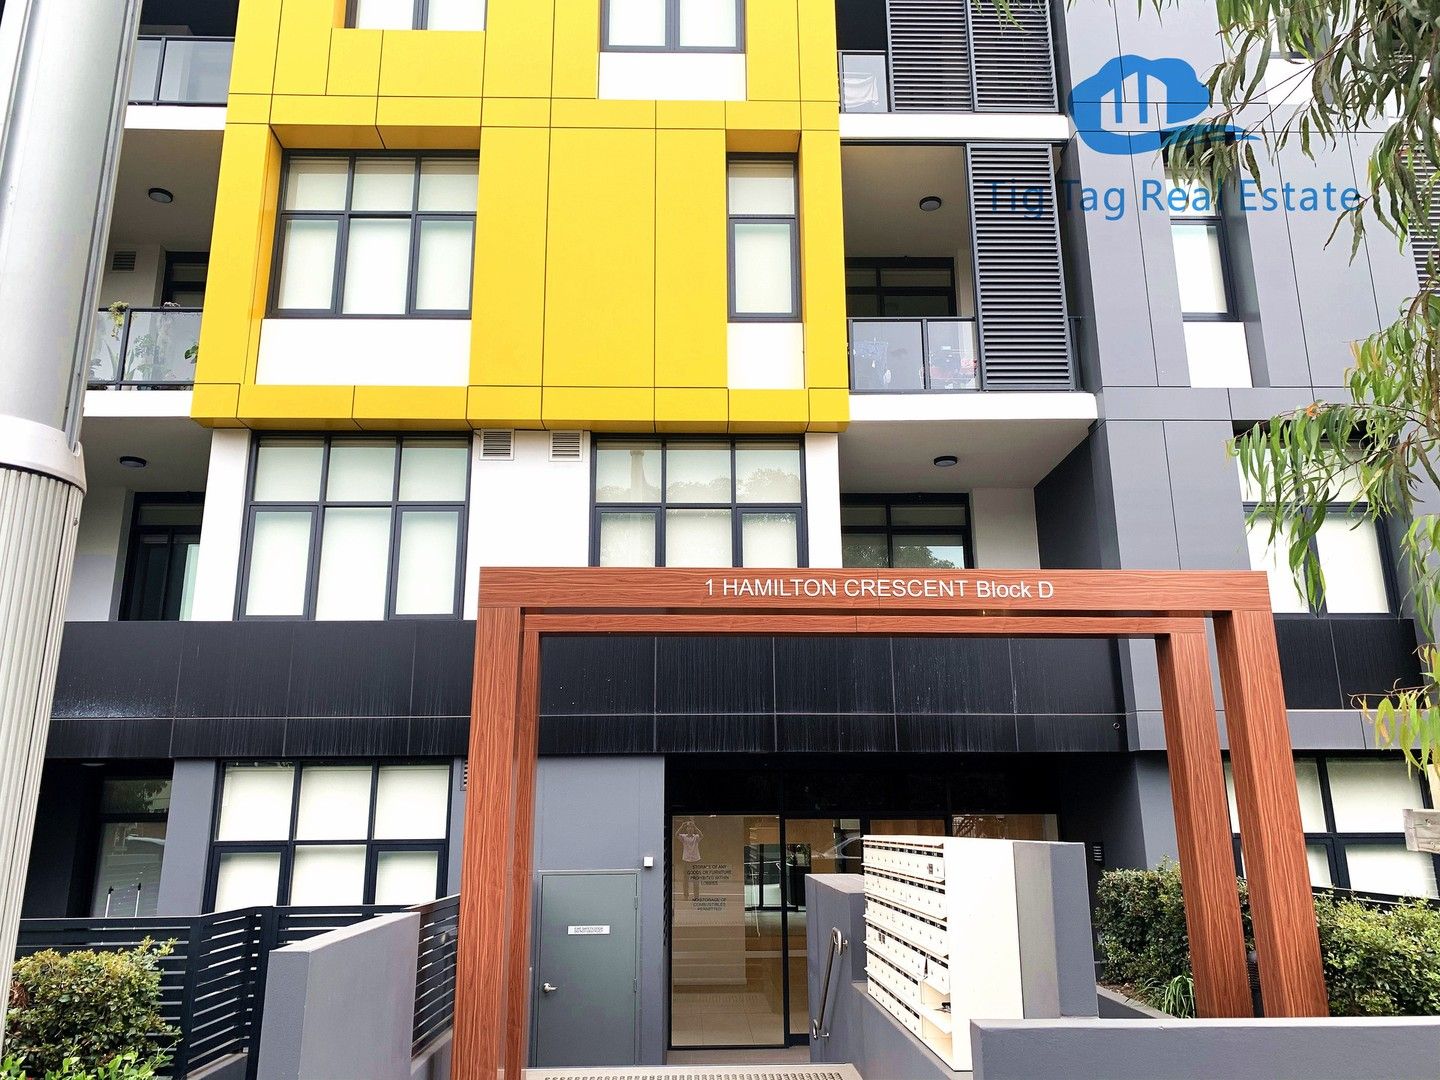 2 bedrooms Apartment / Unit / Flat in D4308/1 Hamilton Crescent RYDE NSW, 2112